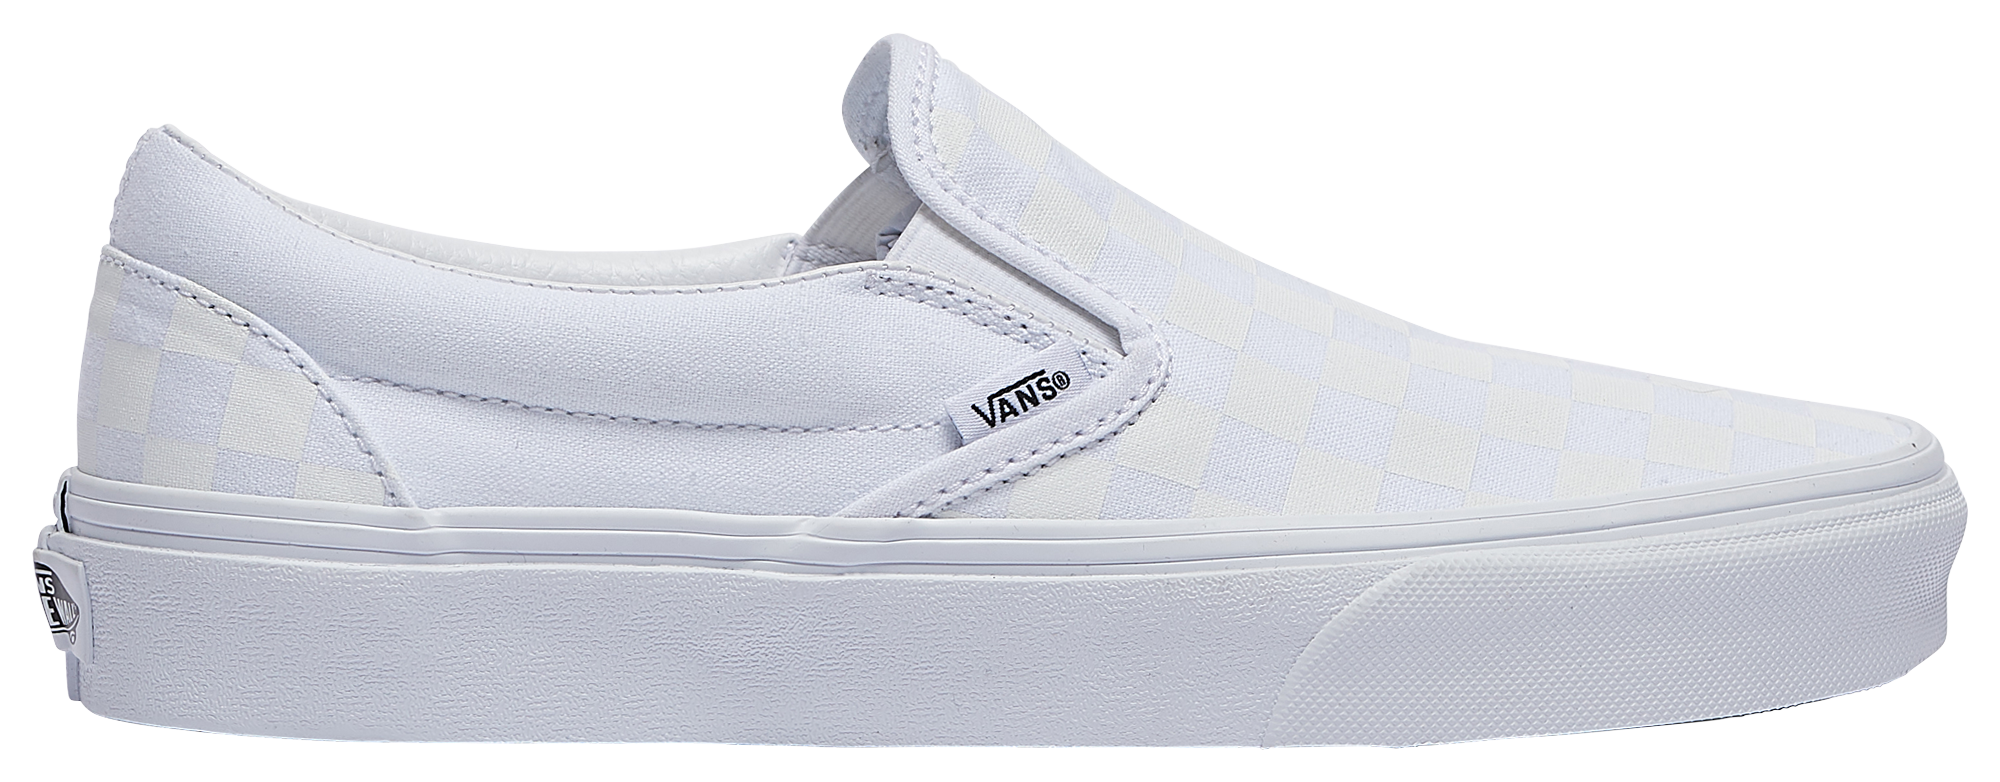 Vans Checkerboard Classic Slip On | Foot Locker